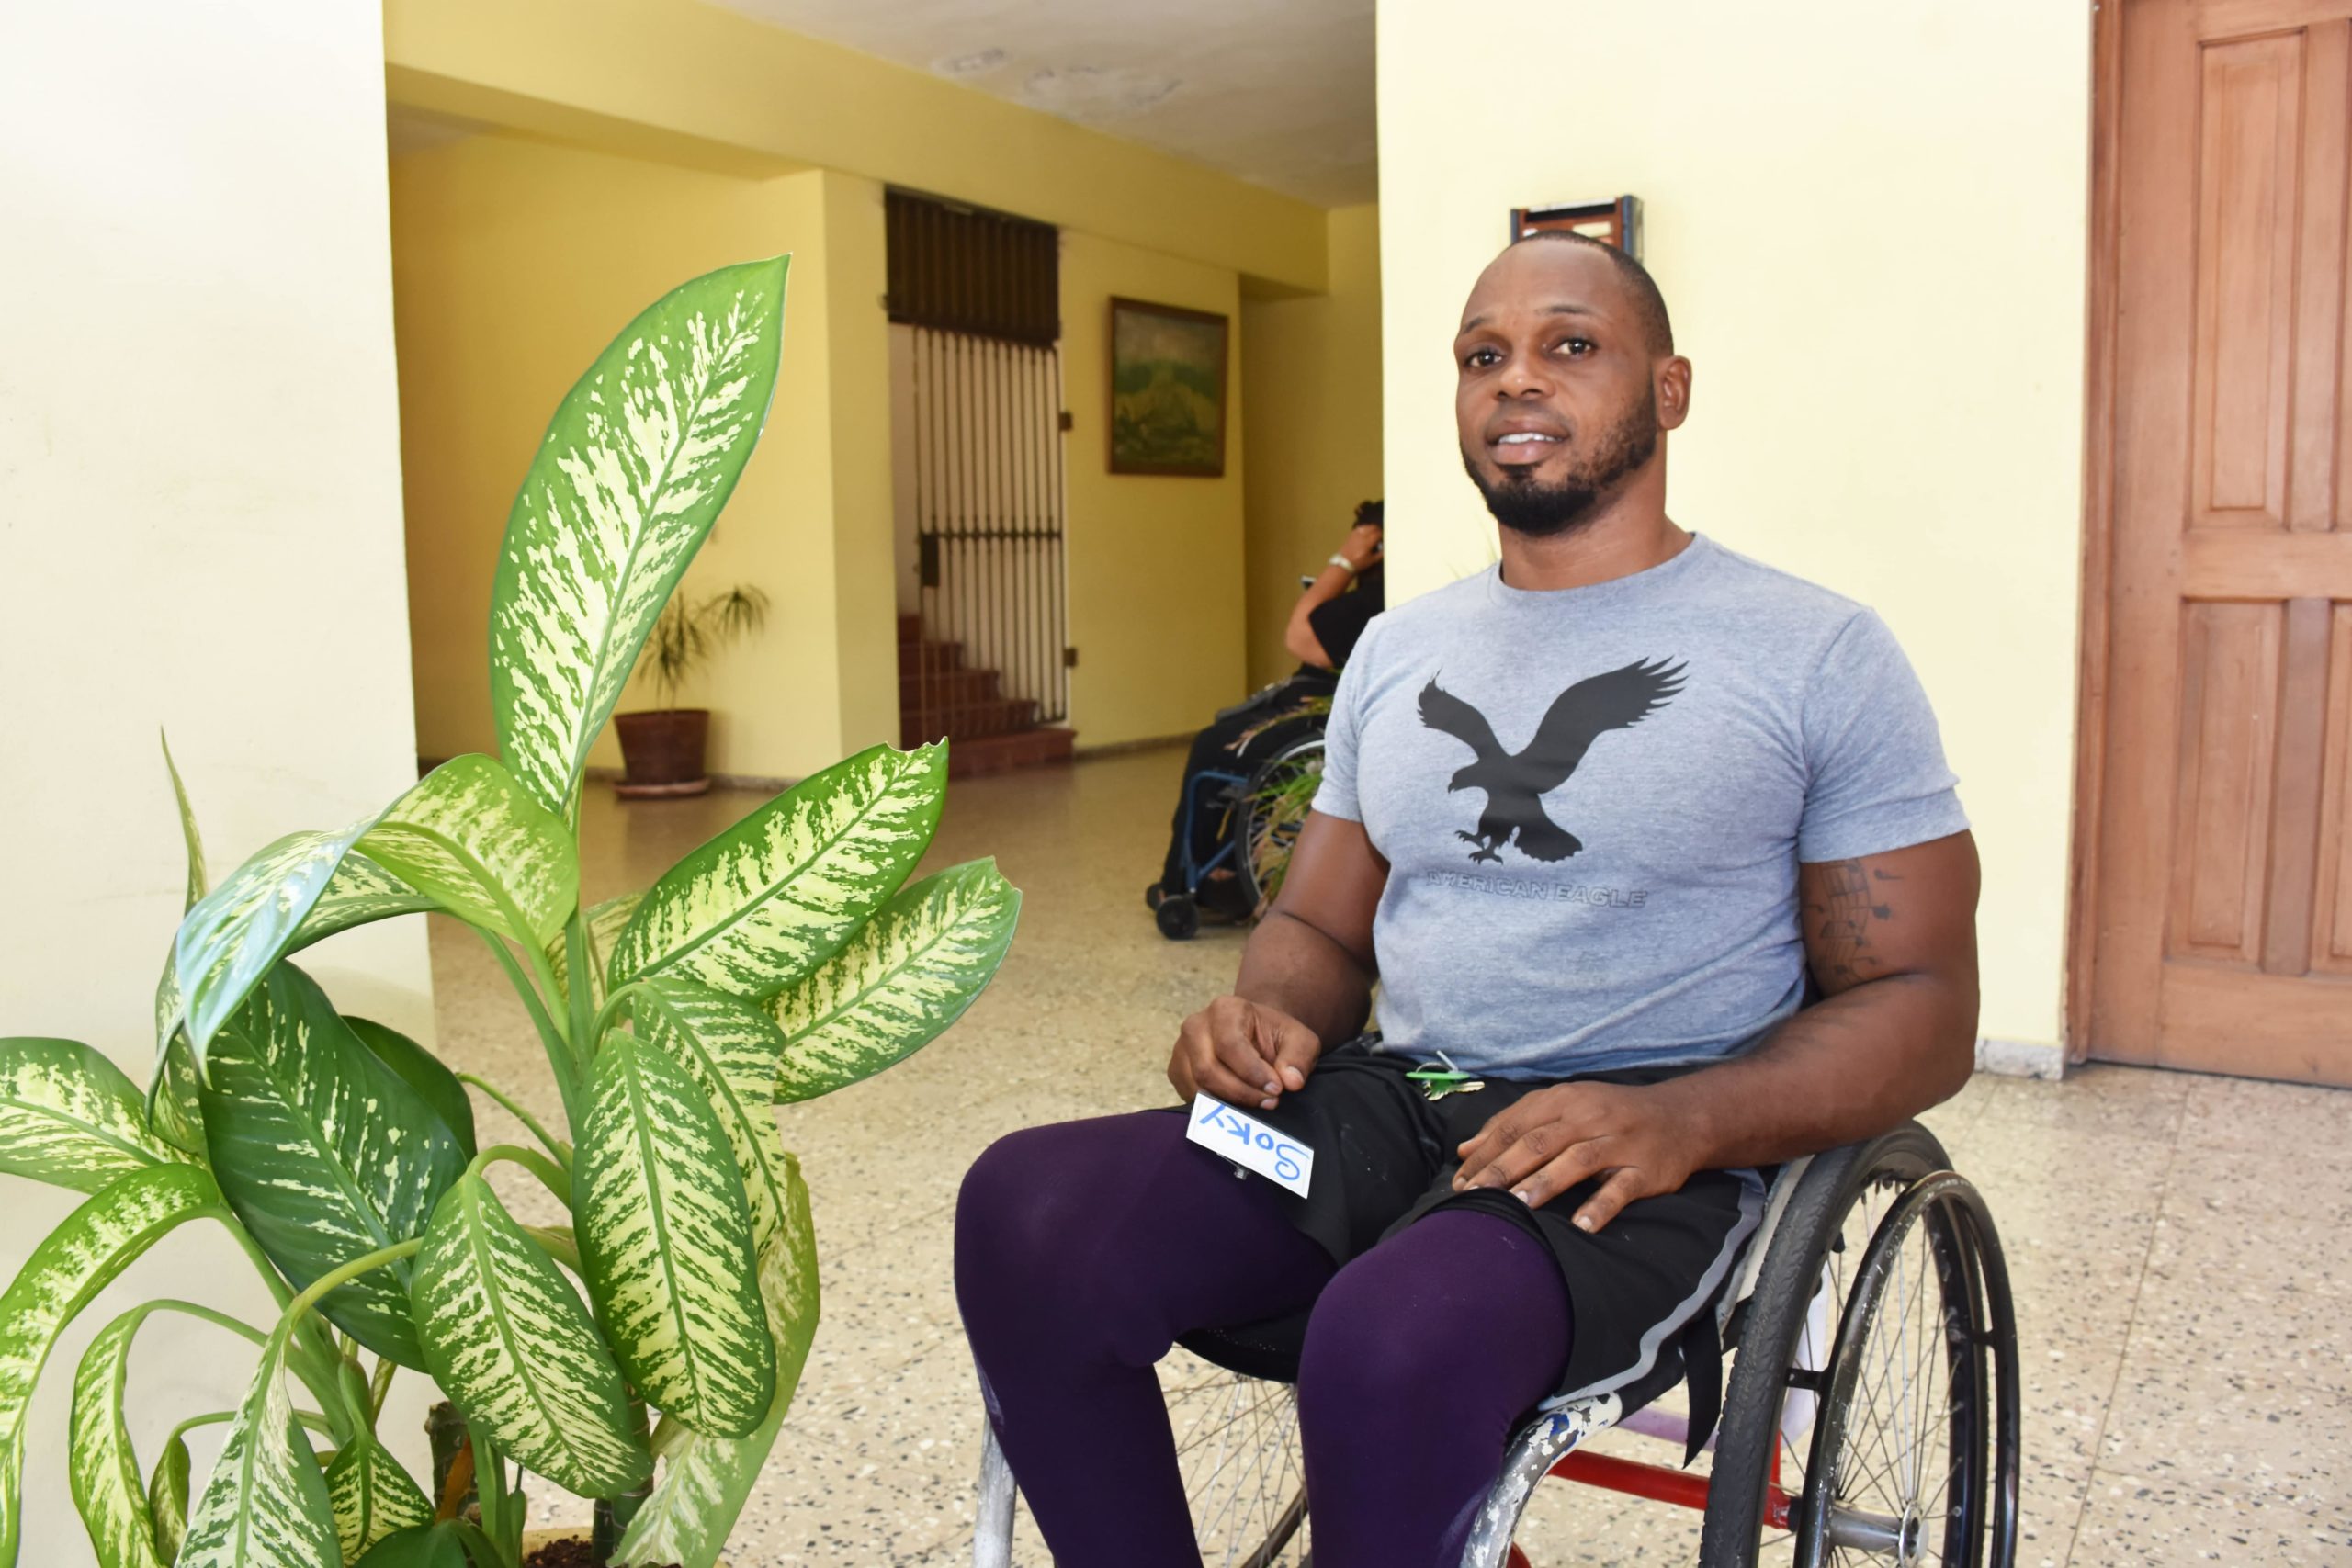 La historia de Soky: “estar postrado en silla de ruedas, ha sido un duro golpe”